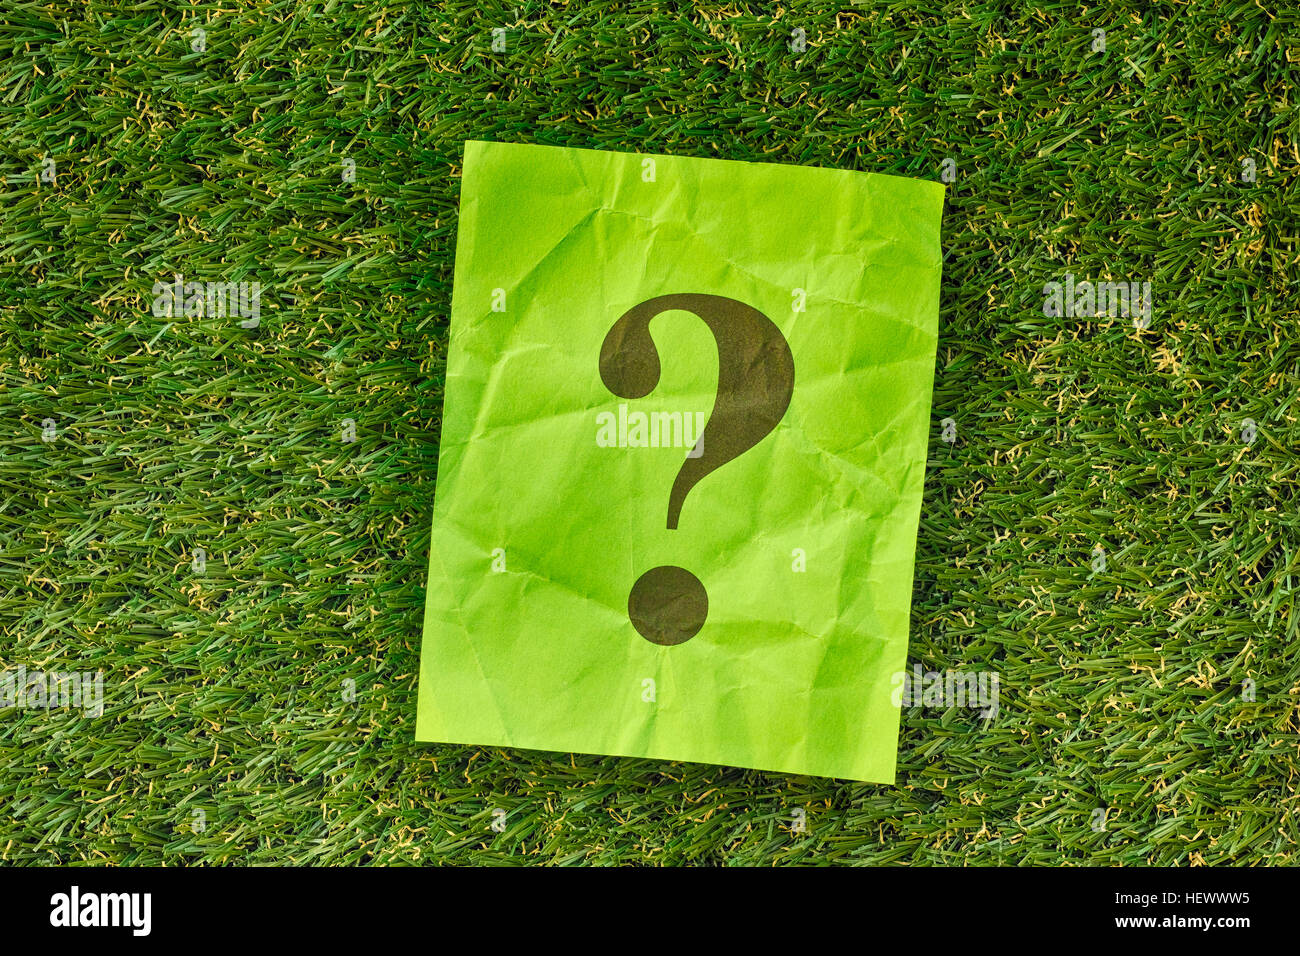 Grünes Papier-Schuldbrief mit Fragezeichen auf dem grünen Rasen. Hautnah. Stockfoto